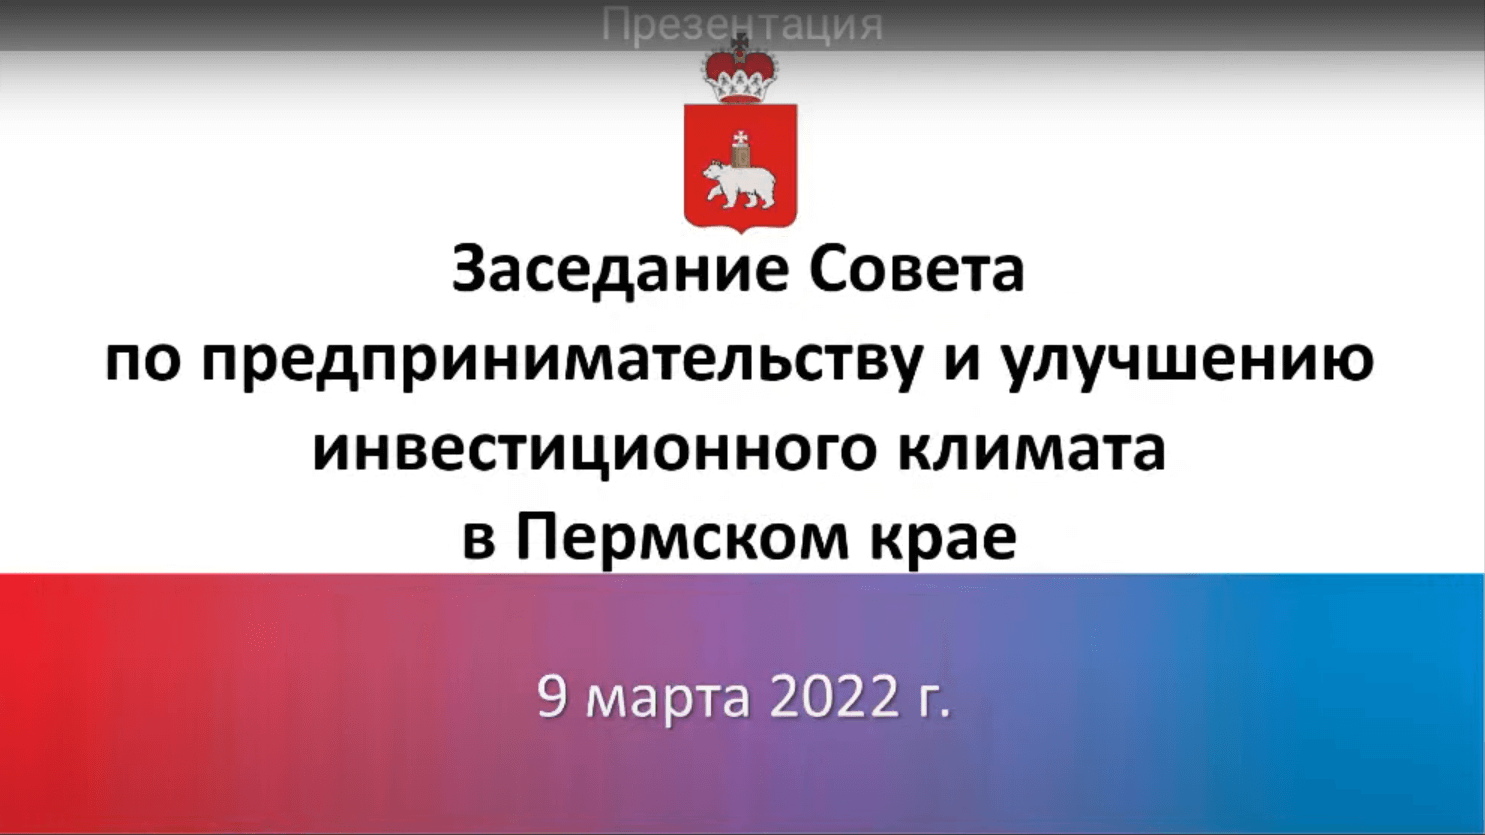 Компания Градиент приняло участие в заседании Совета по предпринимательству и улучшению инвестиционного климата в Пермском крае 09.03.2022